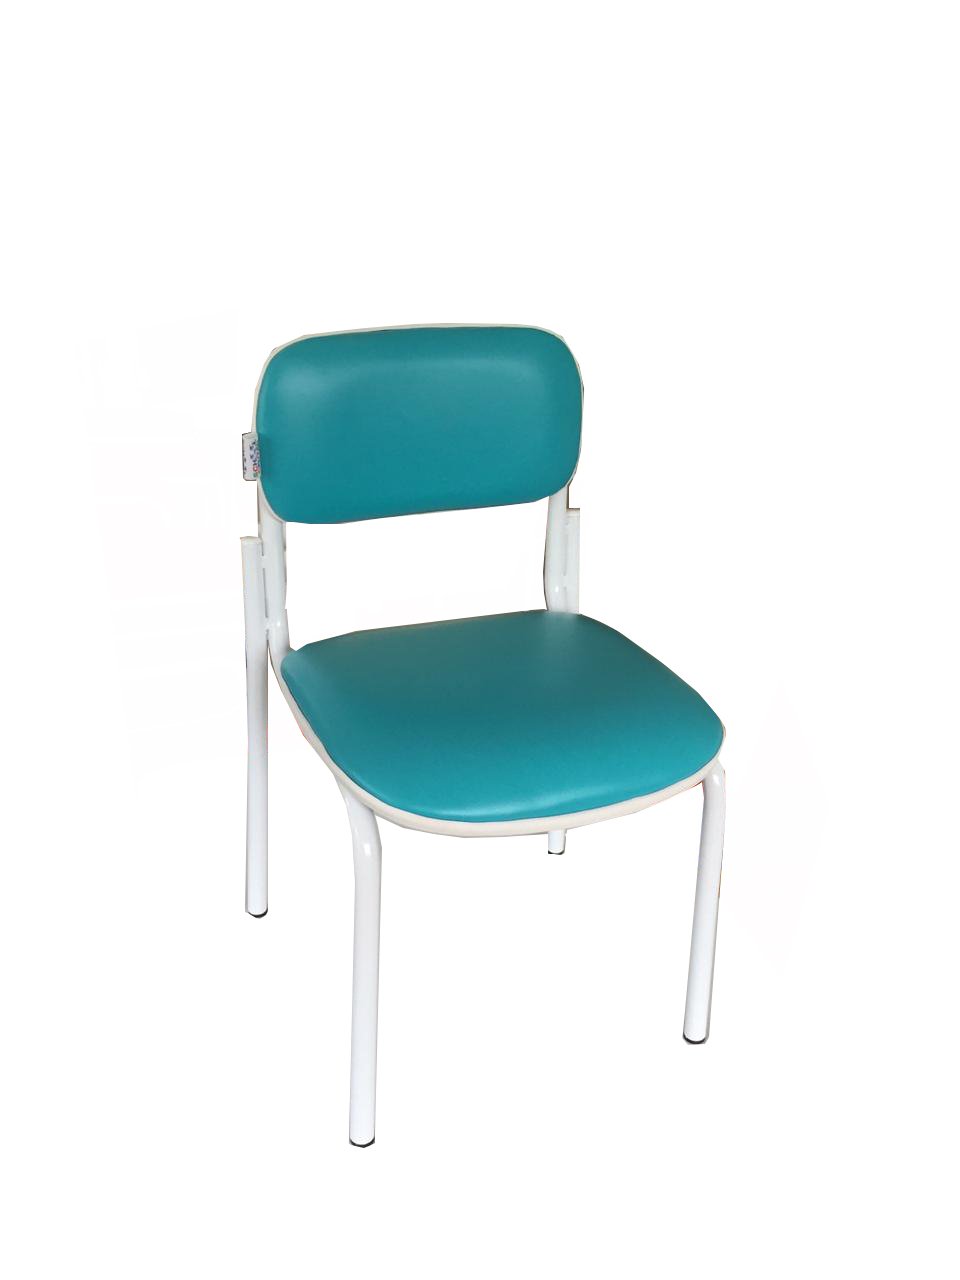 Sc 002 Cadeira Infantil Verde Acqua/branco Schoolcenter 05068